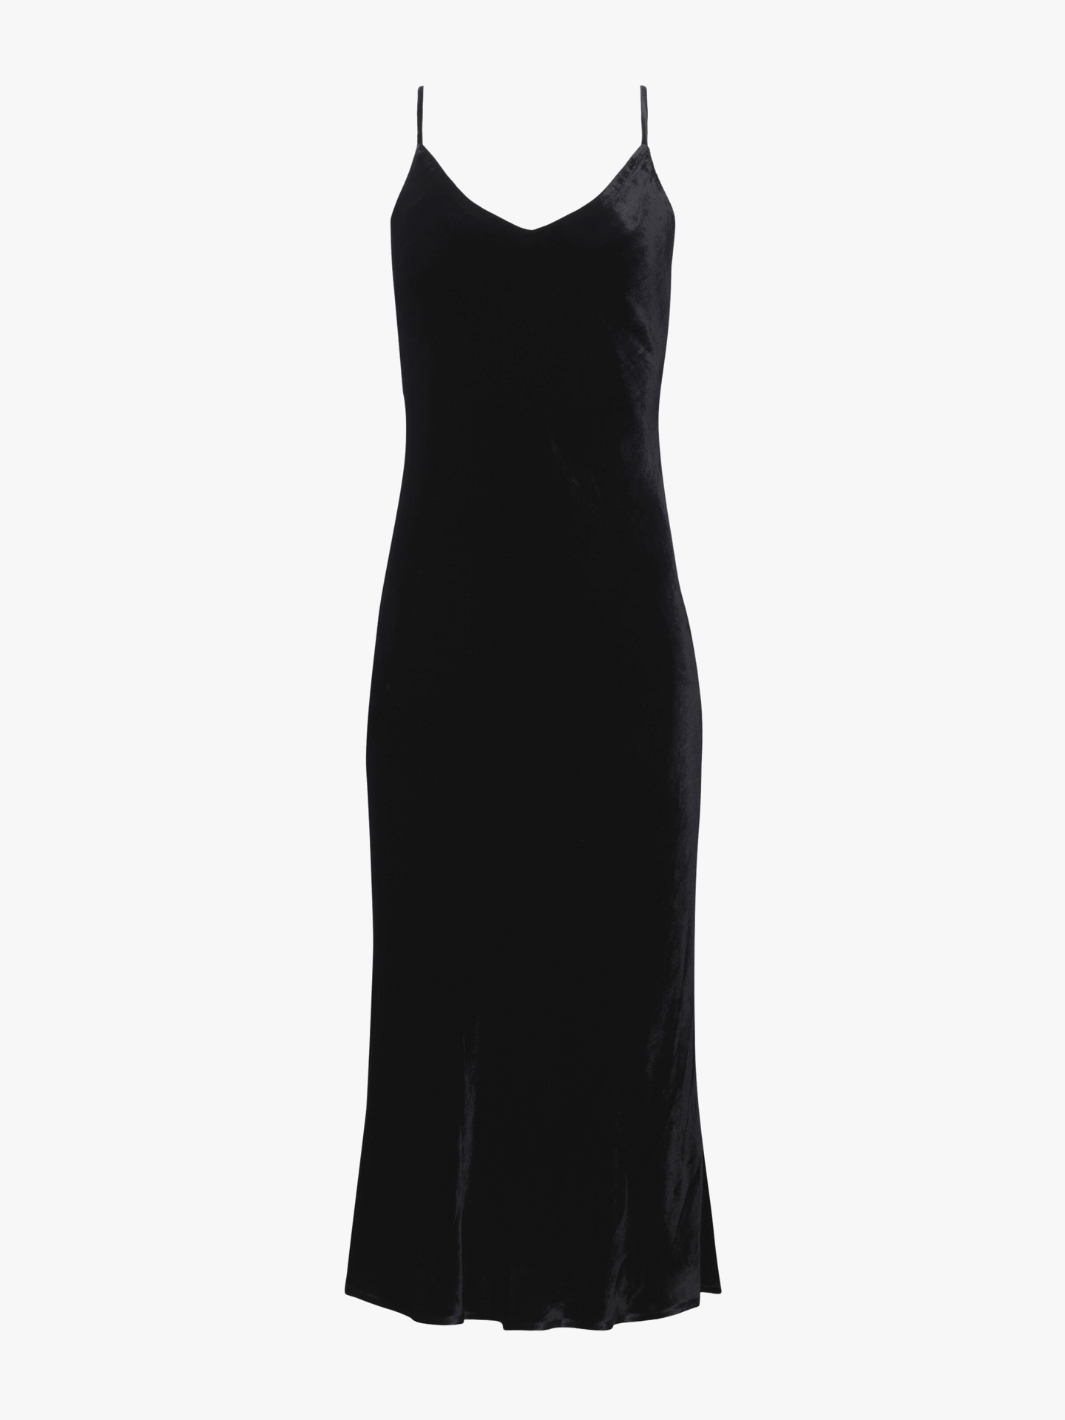 SERIDIE MID LENGTH SLIP DRESS IN BLACK - Romi Boutique